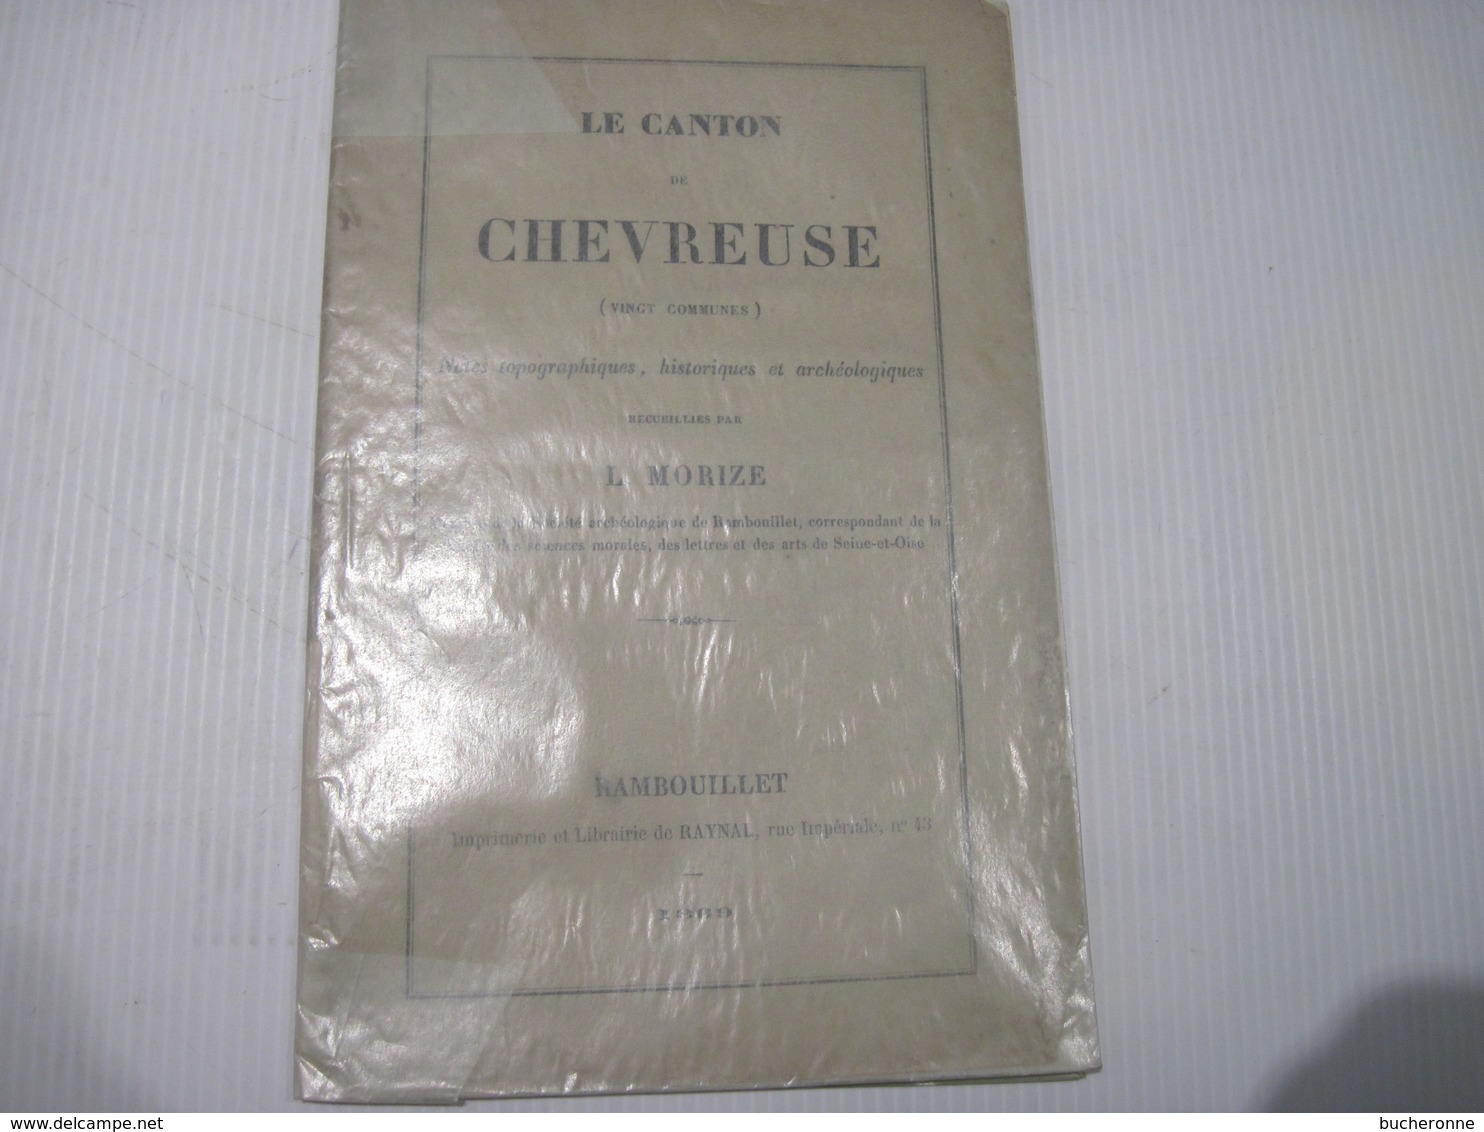 Le Canton De Chevreuse (vingt Communes): Notes Topographiques, Historiques Et Archéologiques (1869) 32 Pages - Documents Historiques